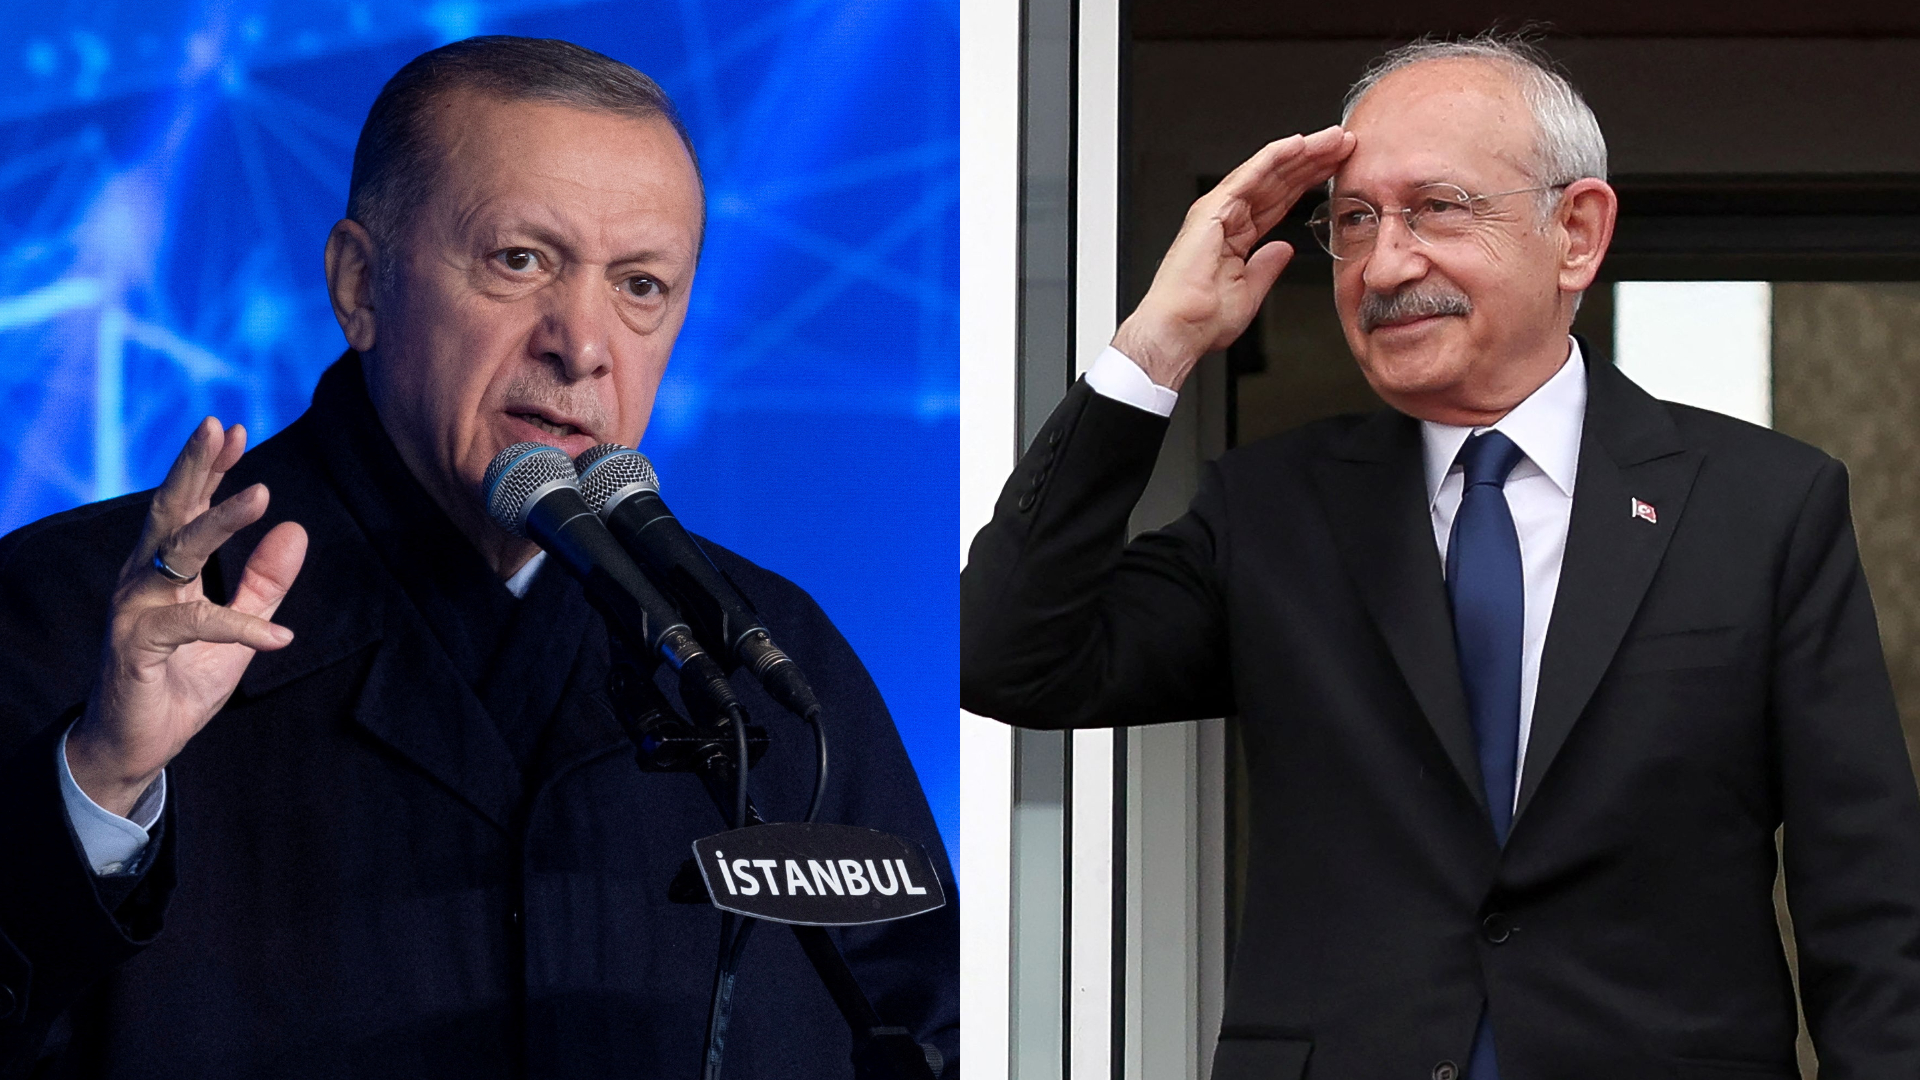 Τουρκία: Ο Κ.Κιλιτσντάρογλου αποκαλεί «απατεώνα» τον Ρ.Τ.Ερντογάν – Υπέβαλε μηνύσεις για βίντεο προπαγάνδας